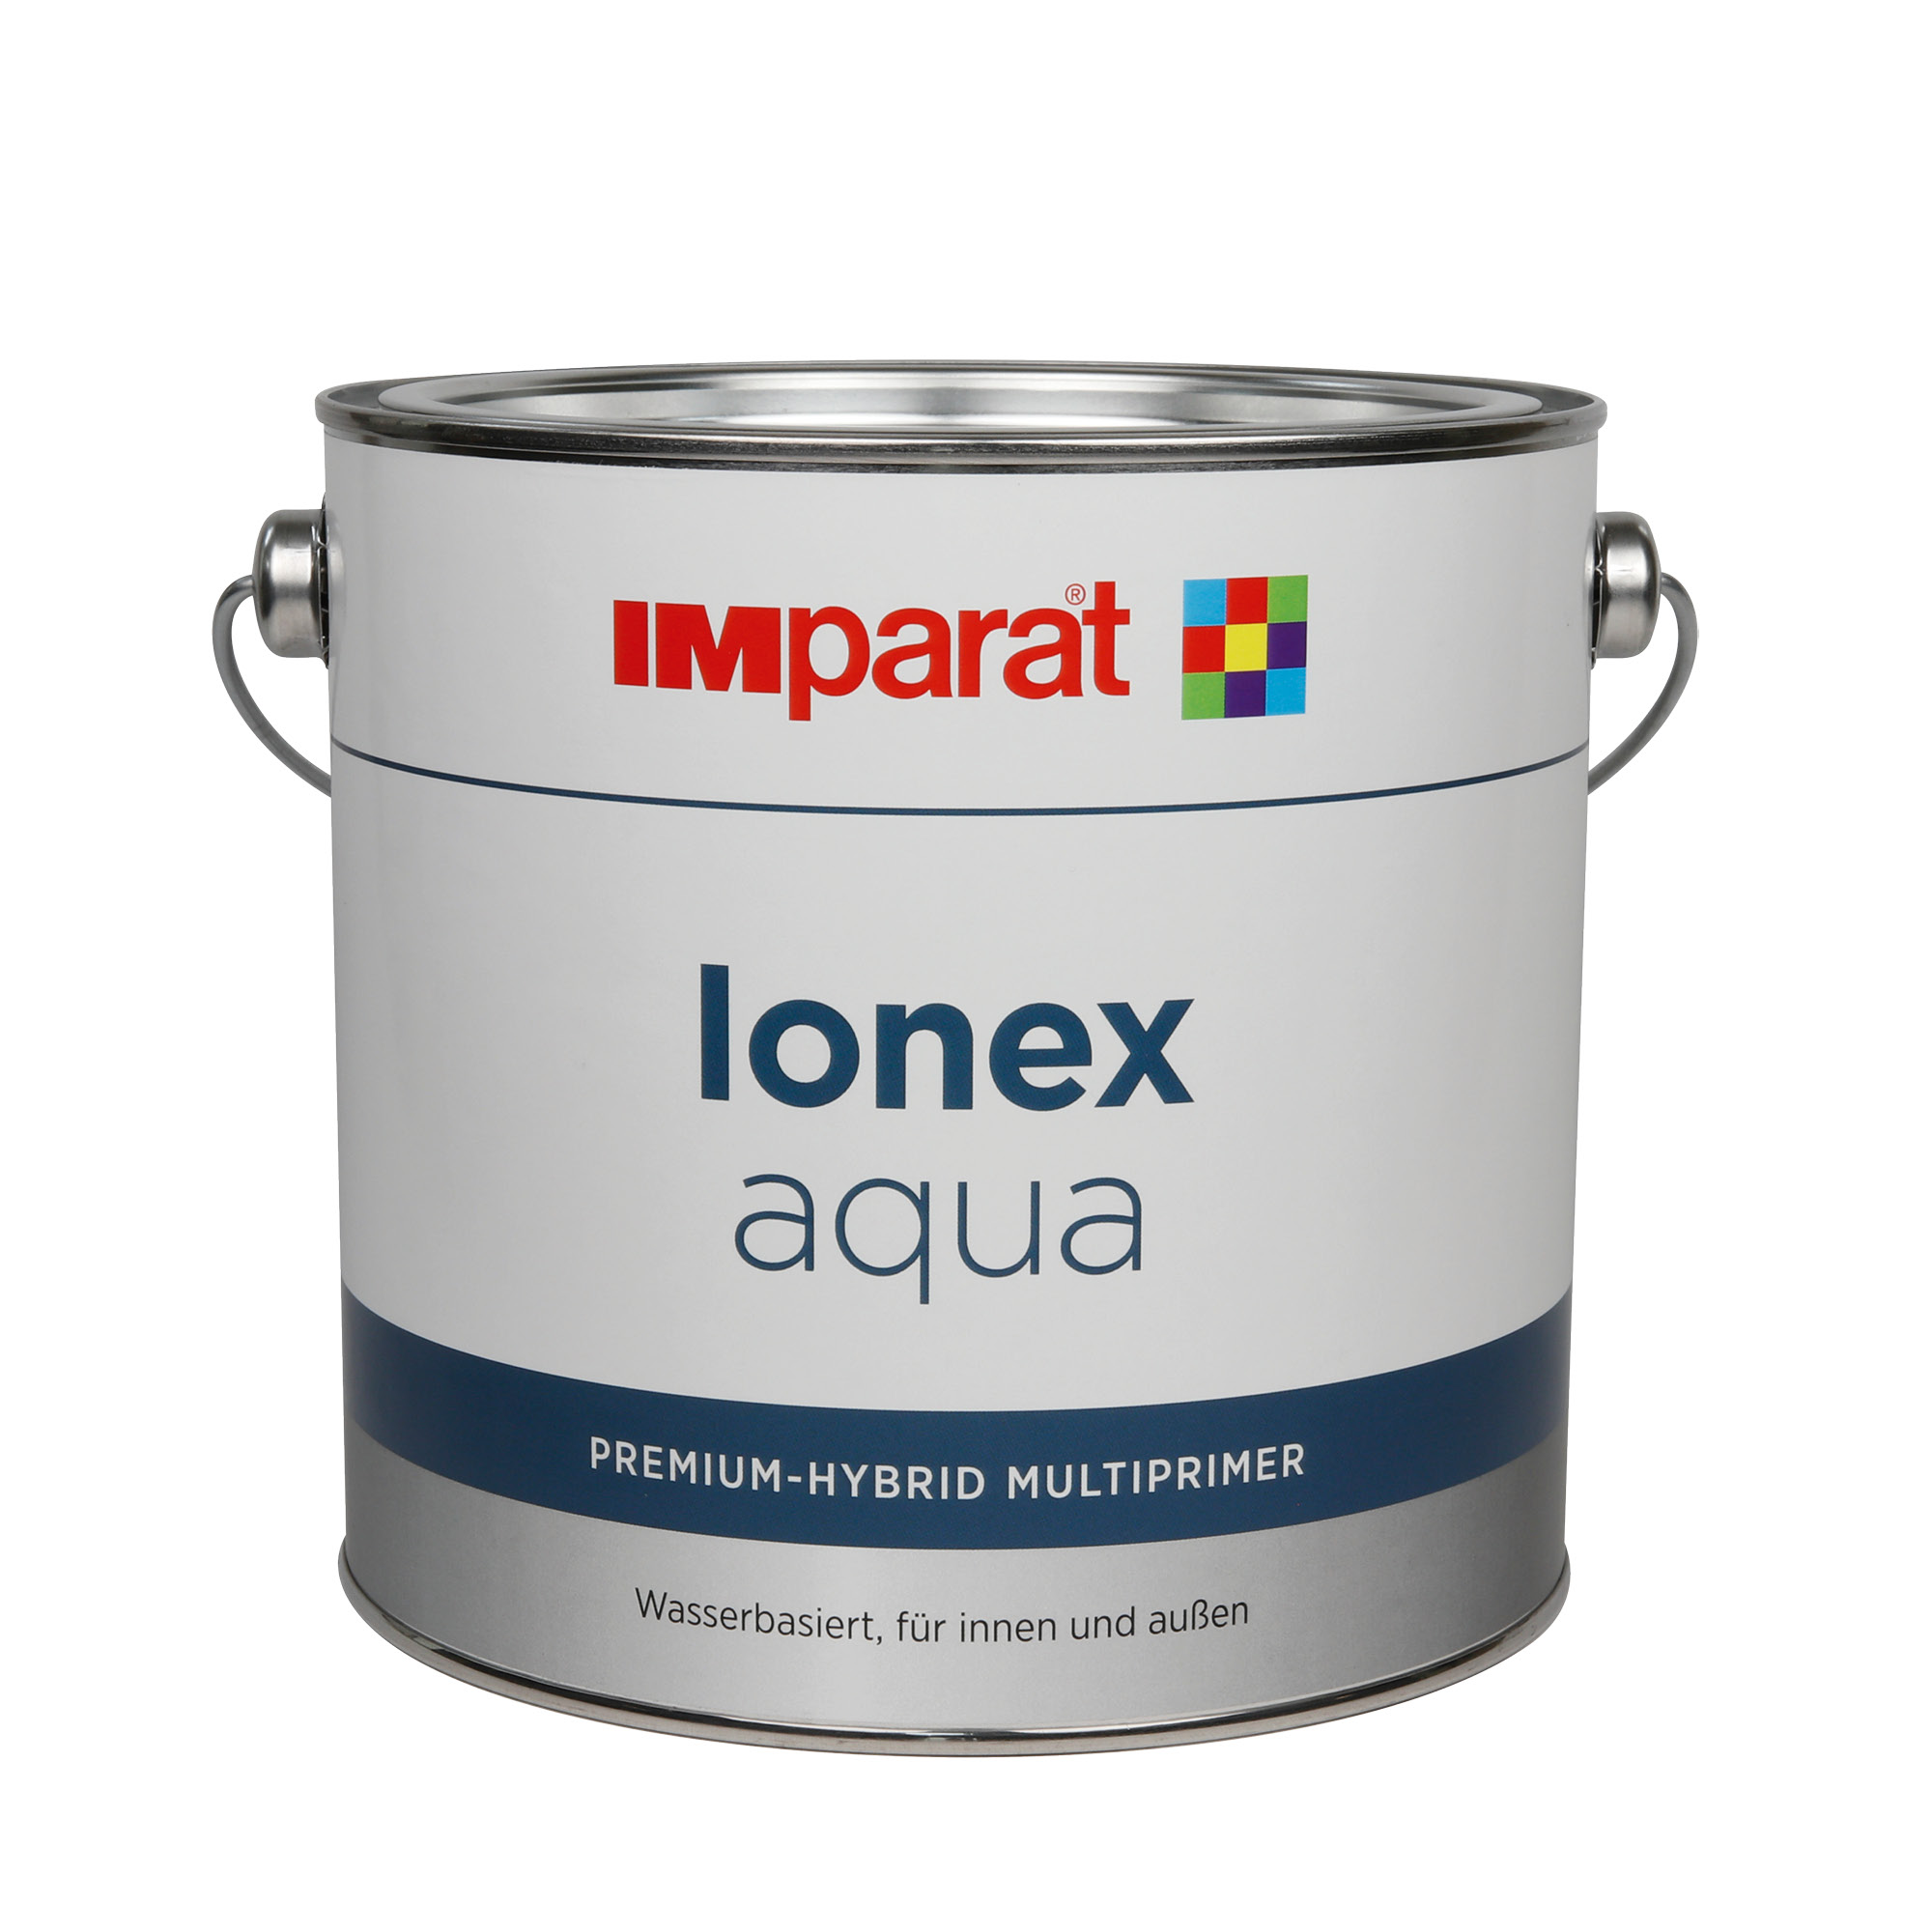 Imparat Ionex Aqua